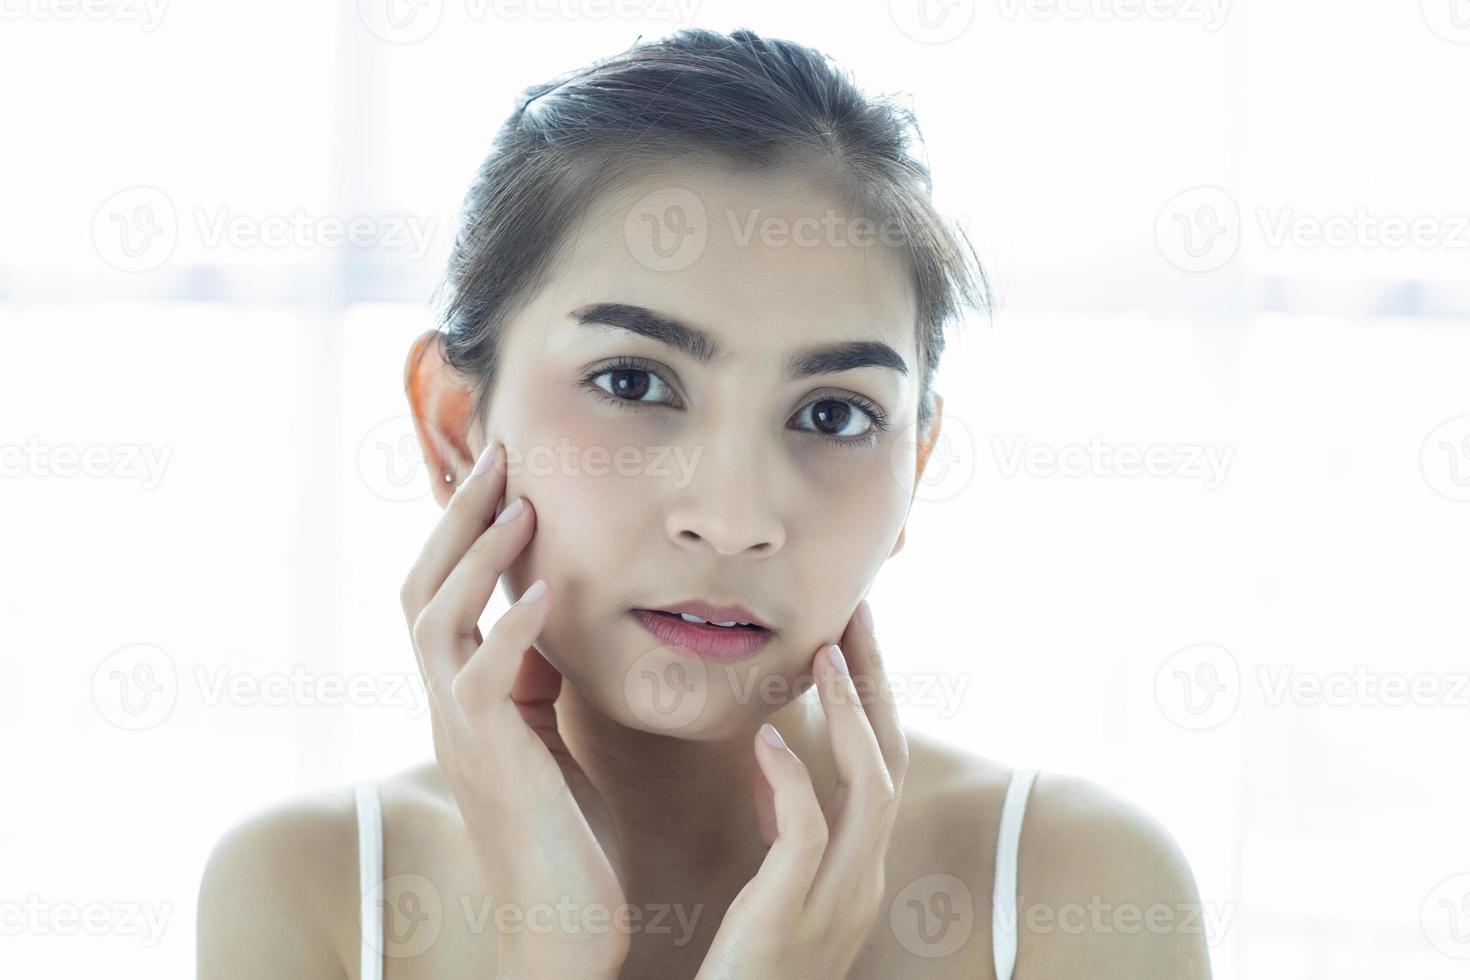 mulheres asiáticas lindas com pele limpa, fresca, tocam o próprio rosto. tratamento facial. cosmetologia, beleza e spa foto